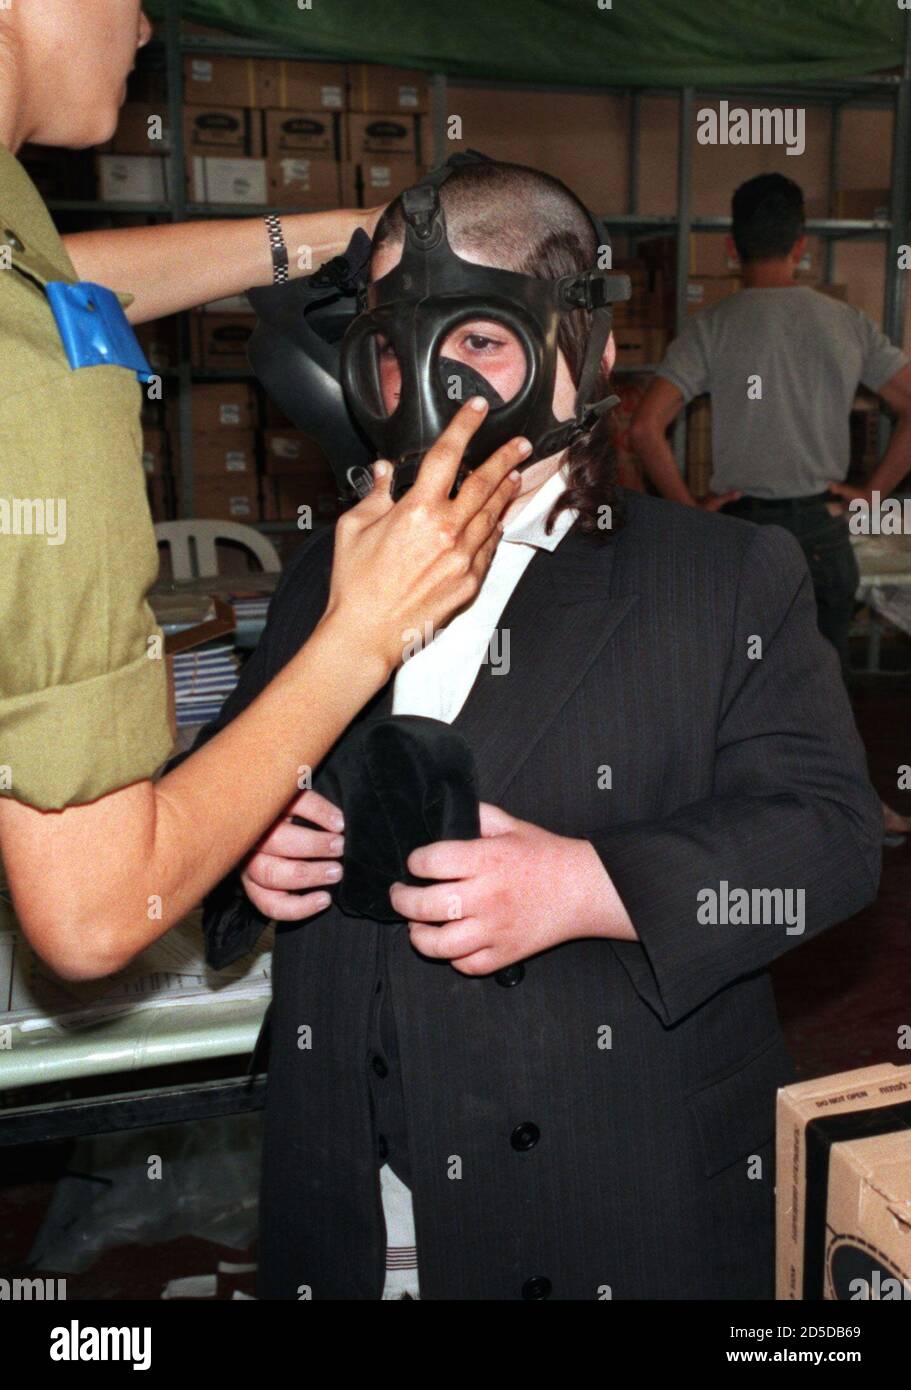 Ein israelischer Soldat trägt eine Gasmaske auf einen ultra-orthodoxen  jüdischen Jungen, während er seine "Yalmuka" am 13. November hält.[Israelis  strömten heute in dieses Gasmasken-Verteilungszentrum, um alte Masken gegen  neue auszutauschen, während ...